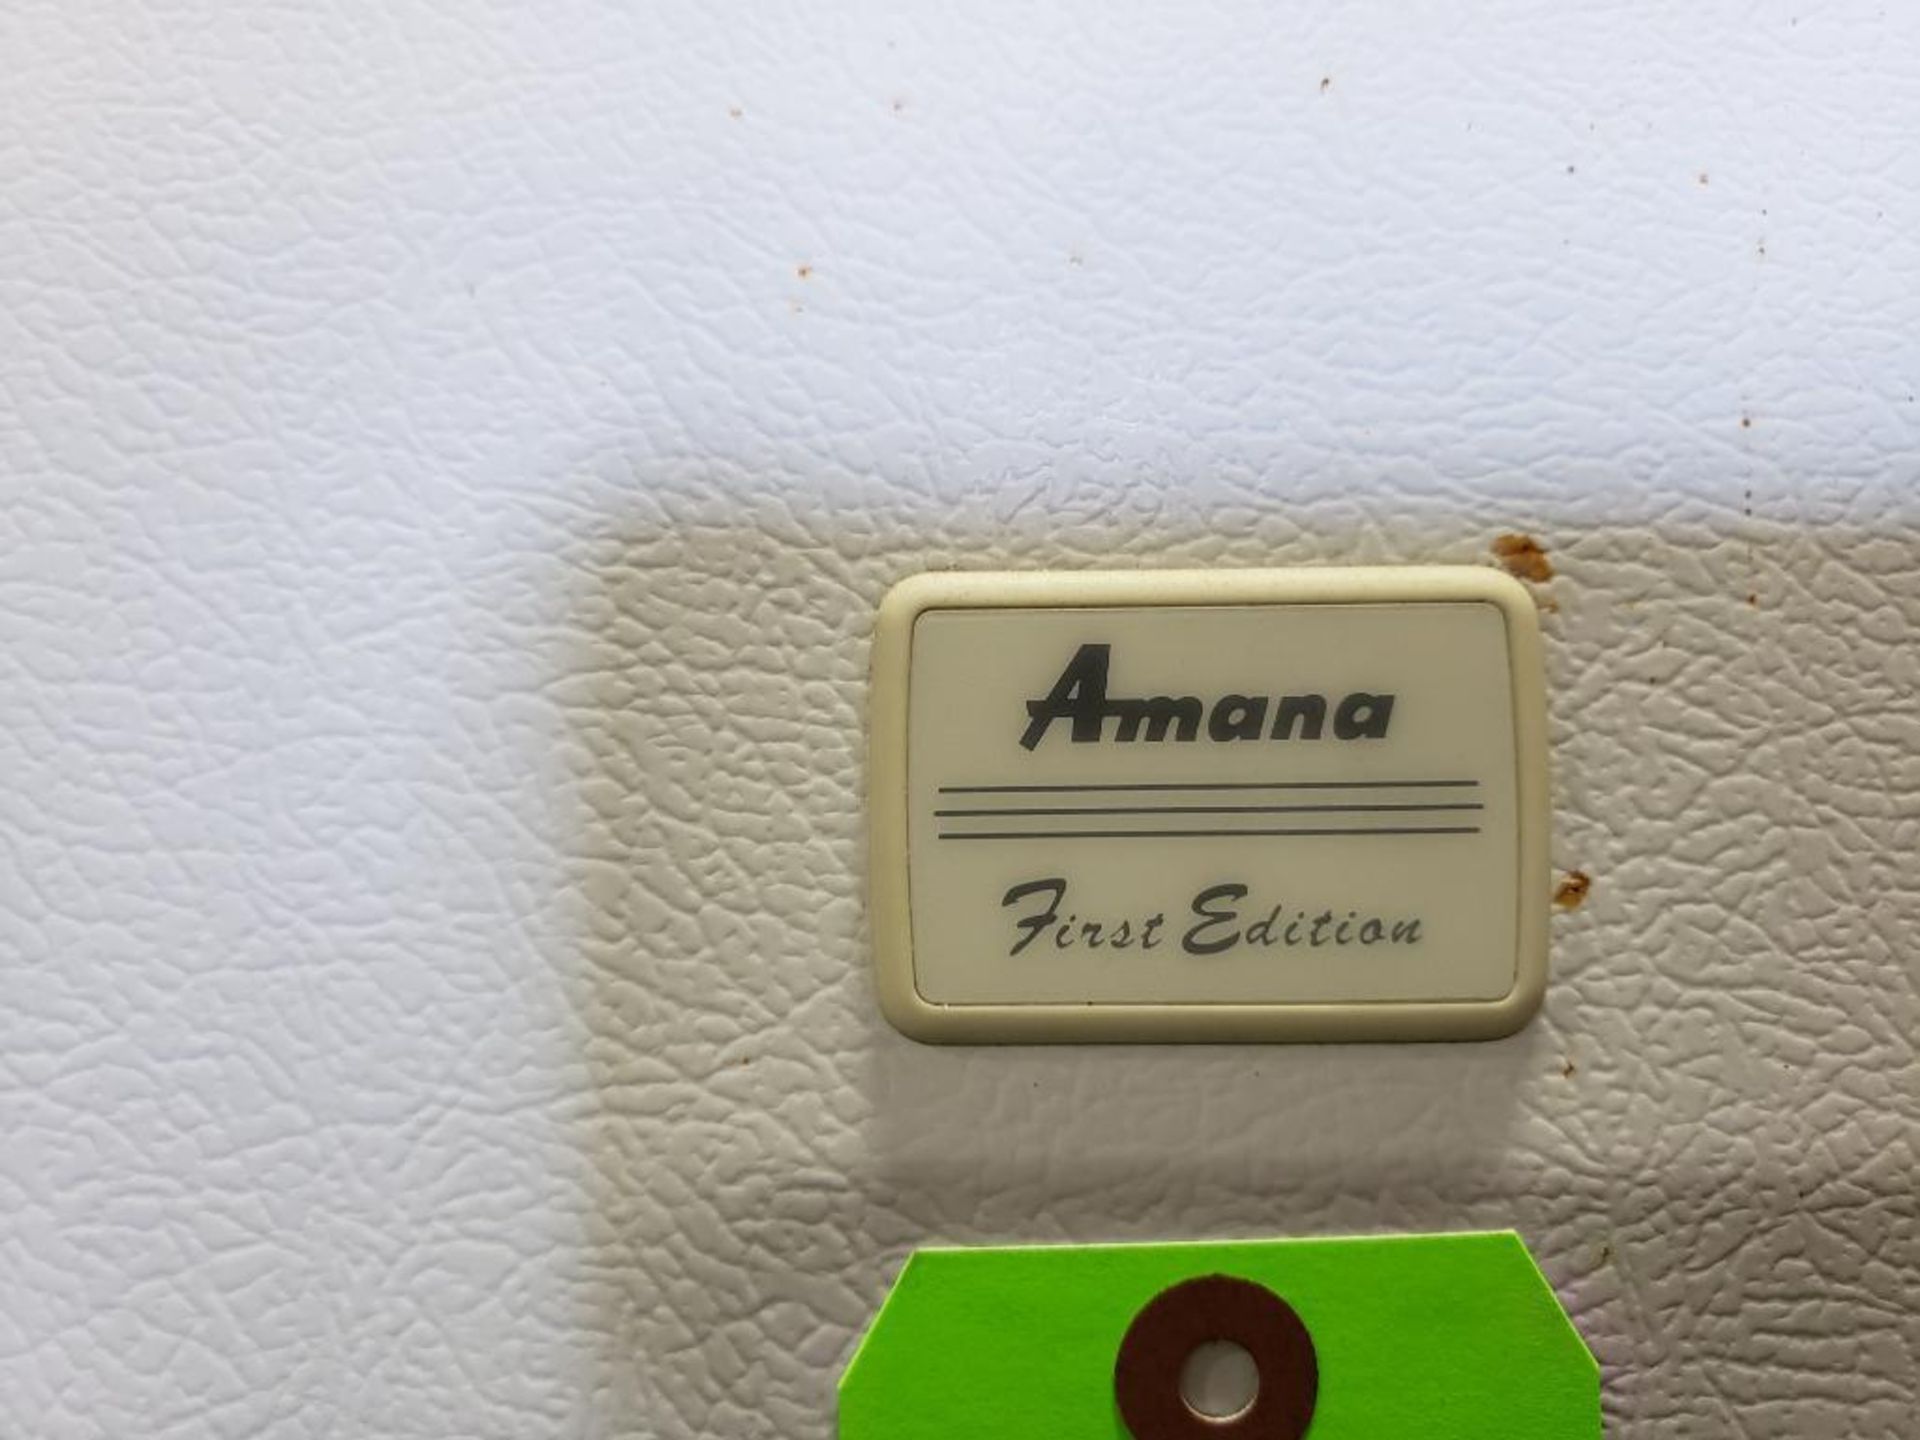 Amana refrigerator / freezer for lab use. - Image 2 of 3